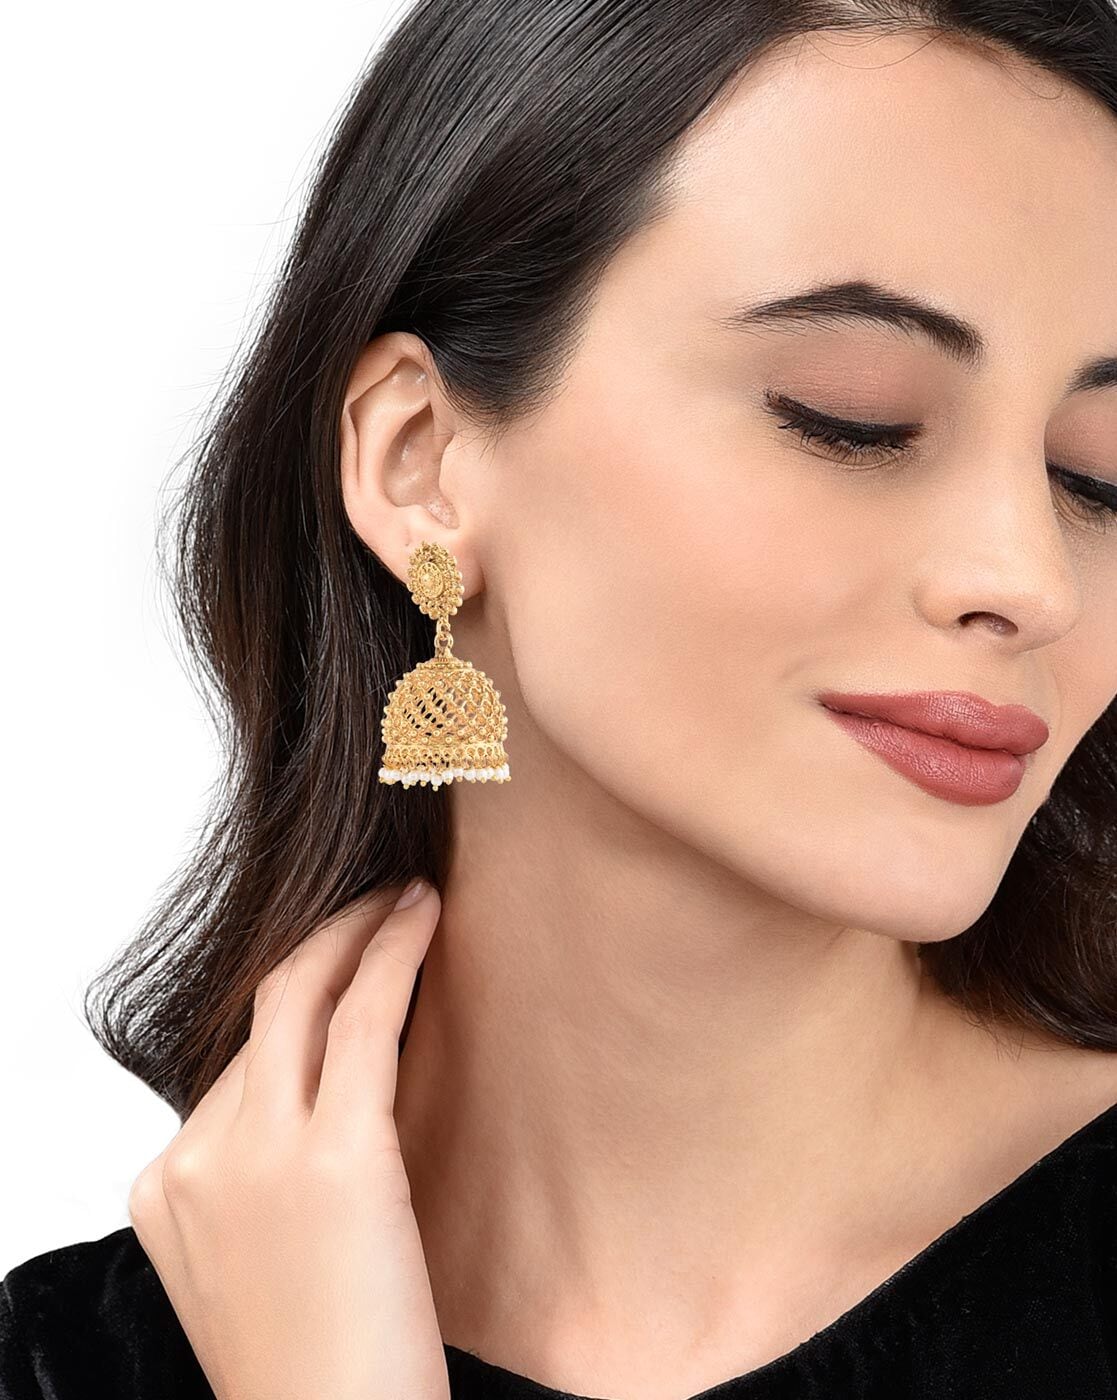 Gold earrings - Silvermerc Designs - 4113916